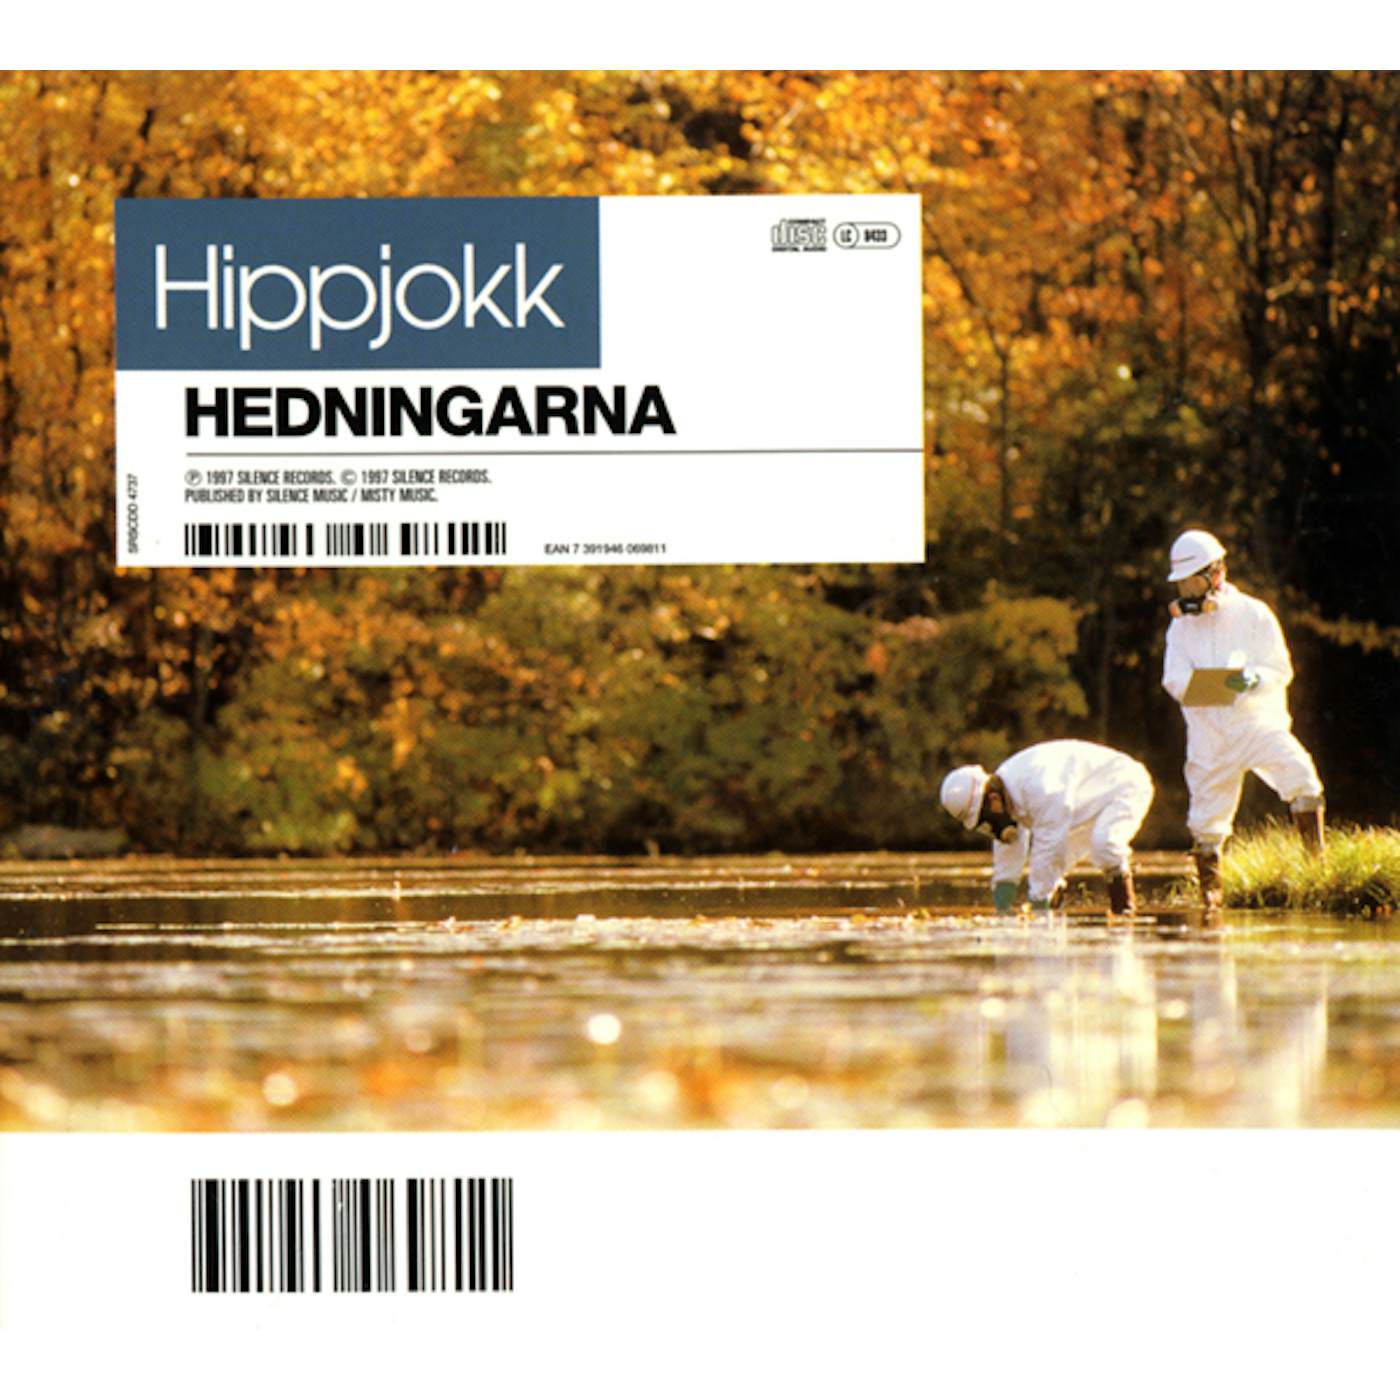 Hedningarna HIPPJOKK CD